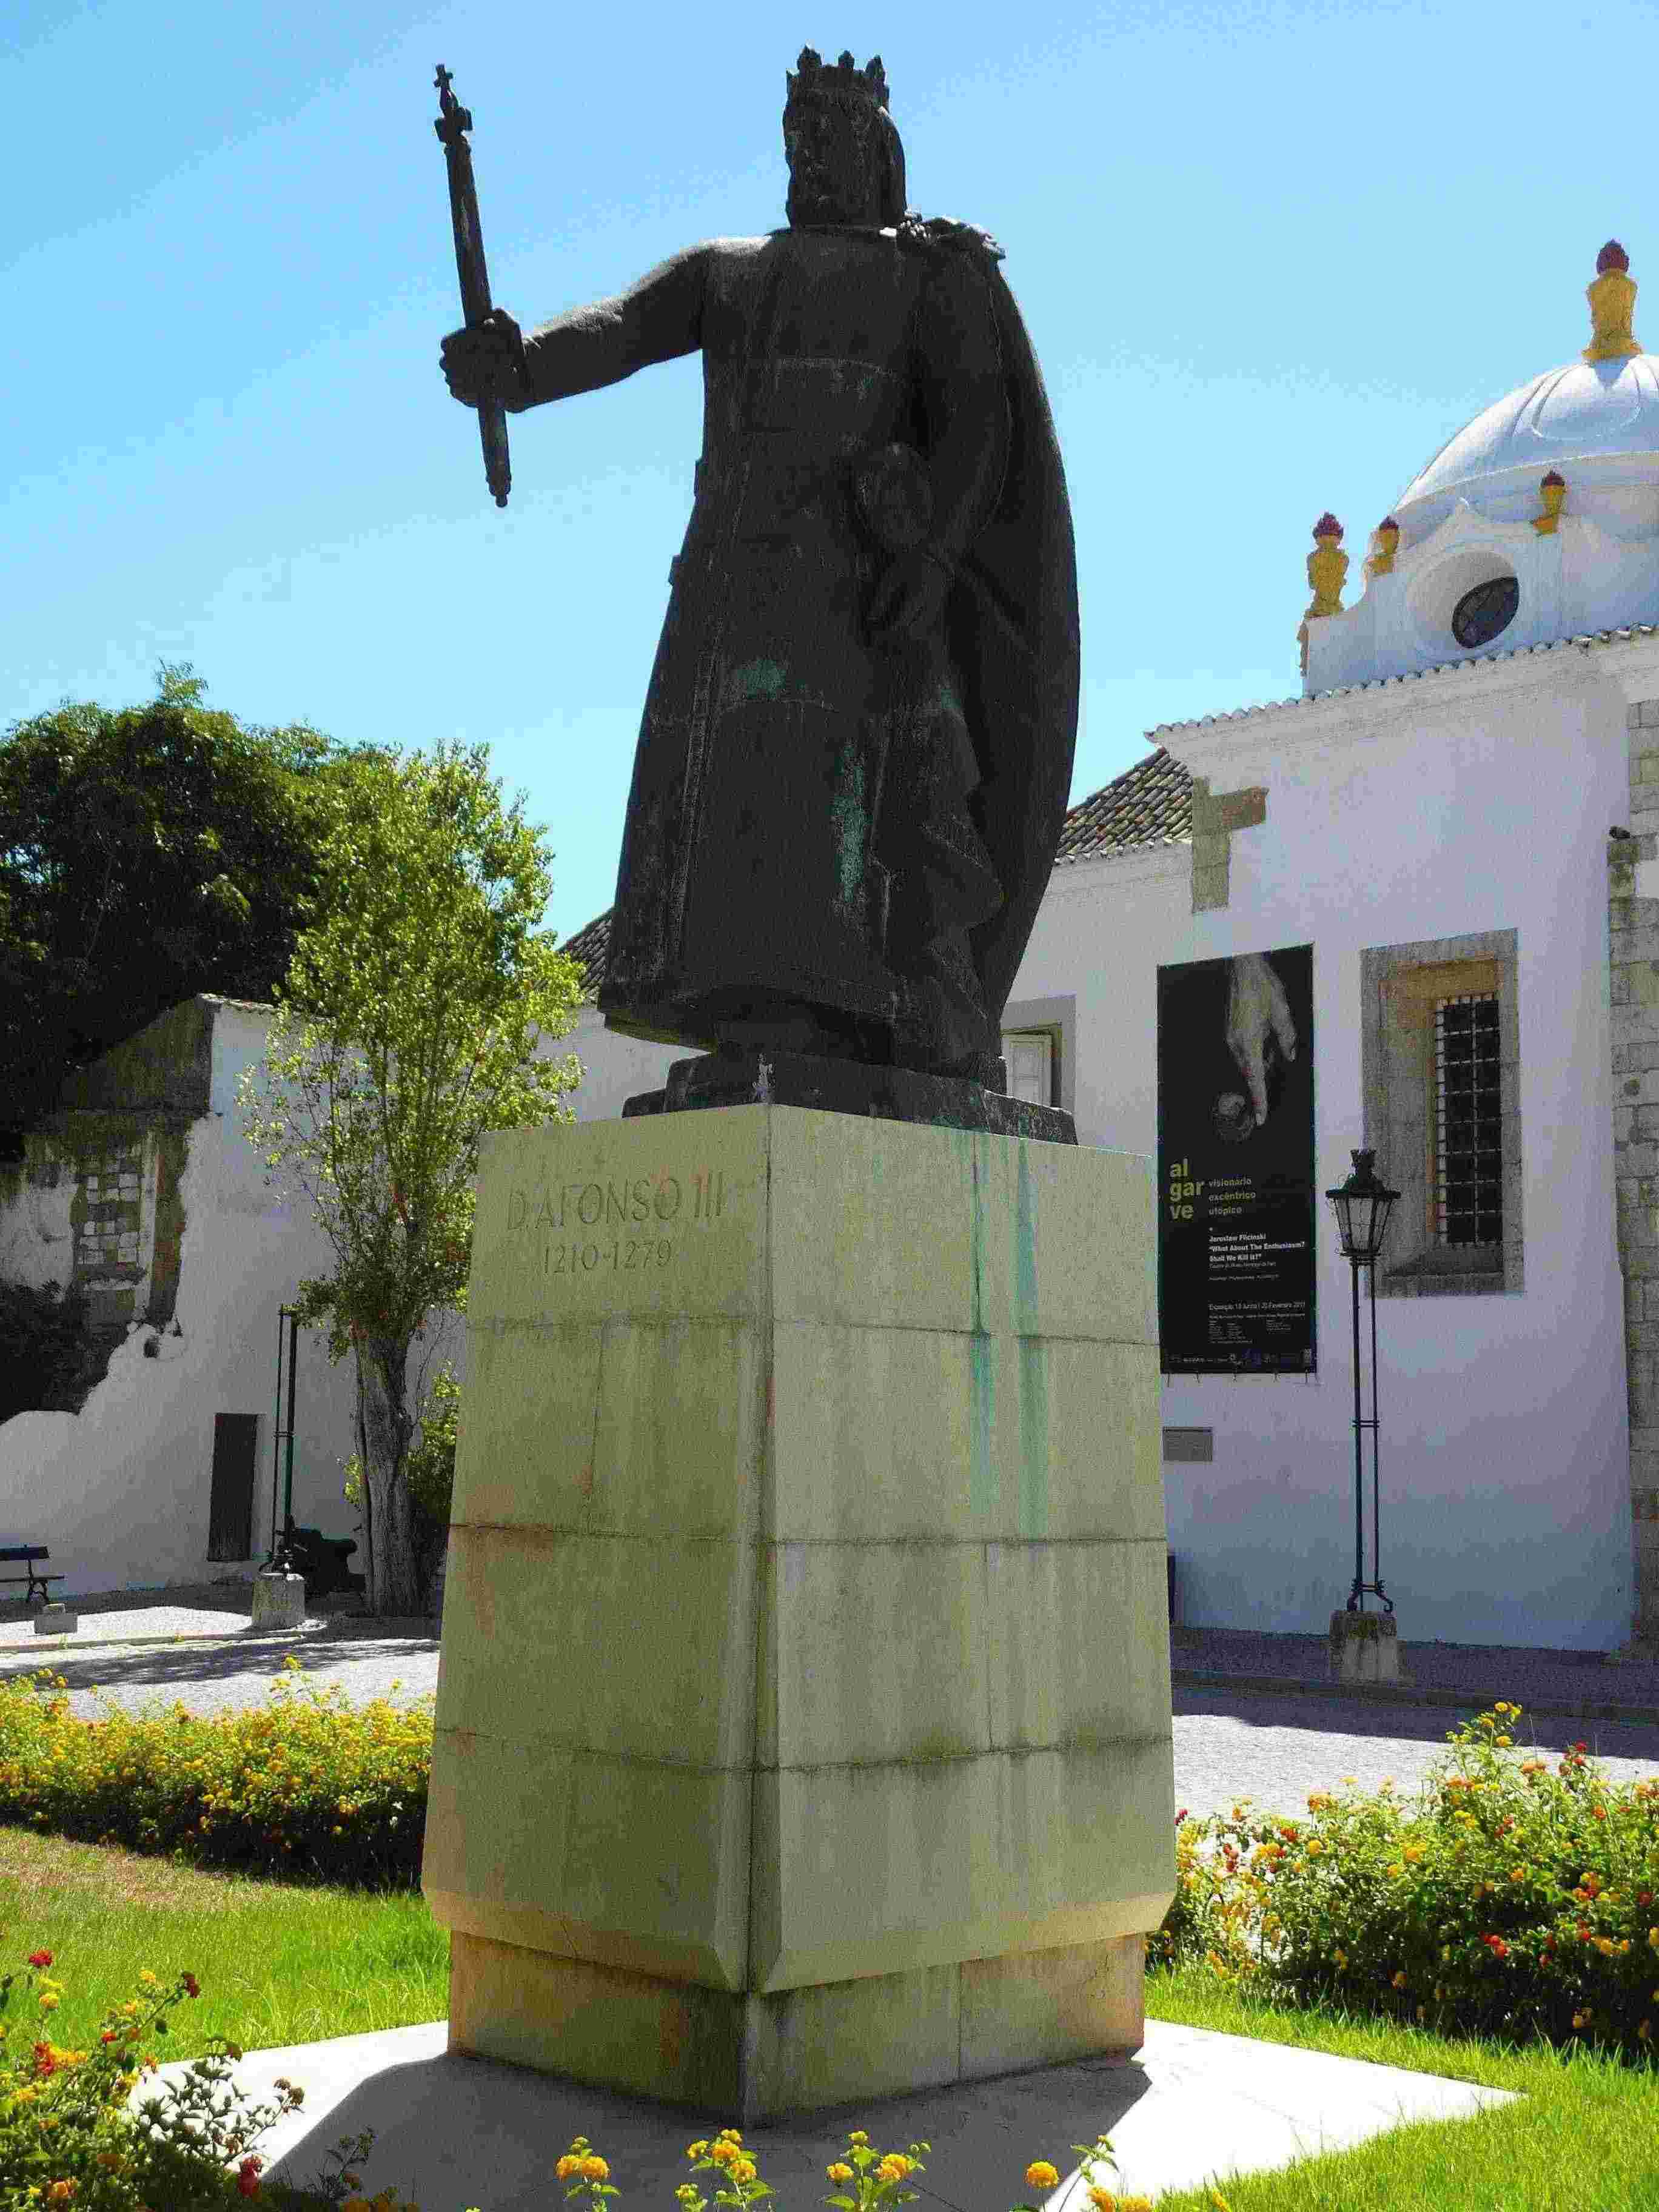 Statue of D Afonso III Faro